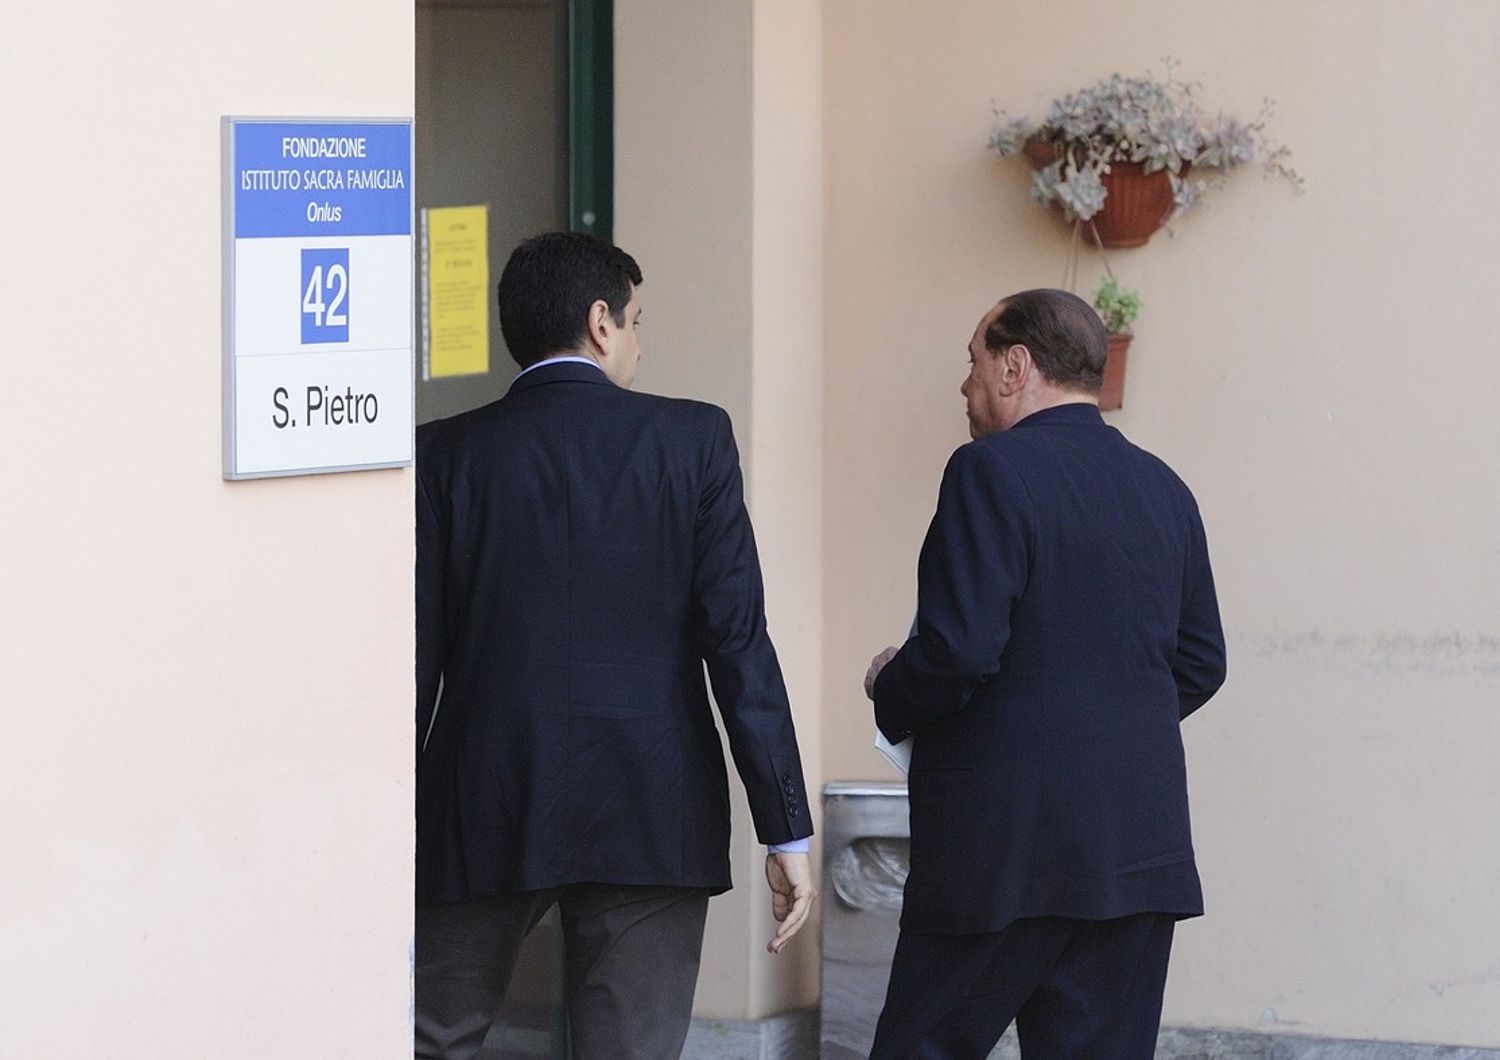 Berlusconi istituto sacra famiglia (agf)&nbsp;